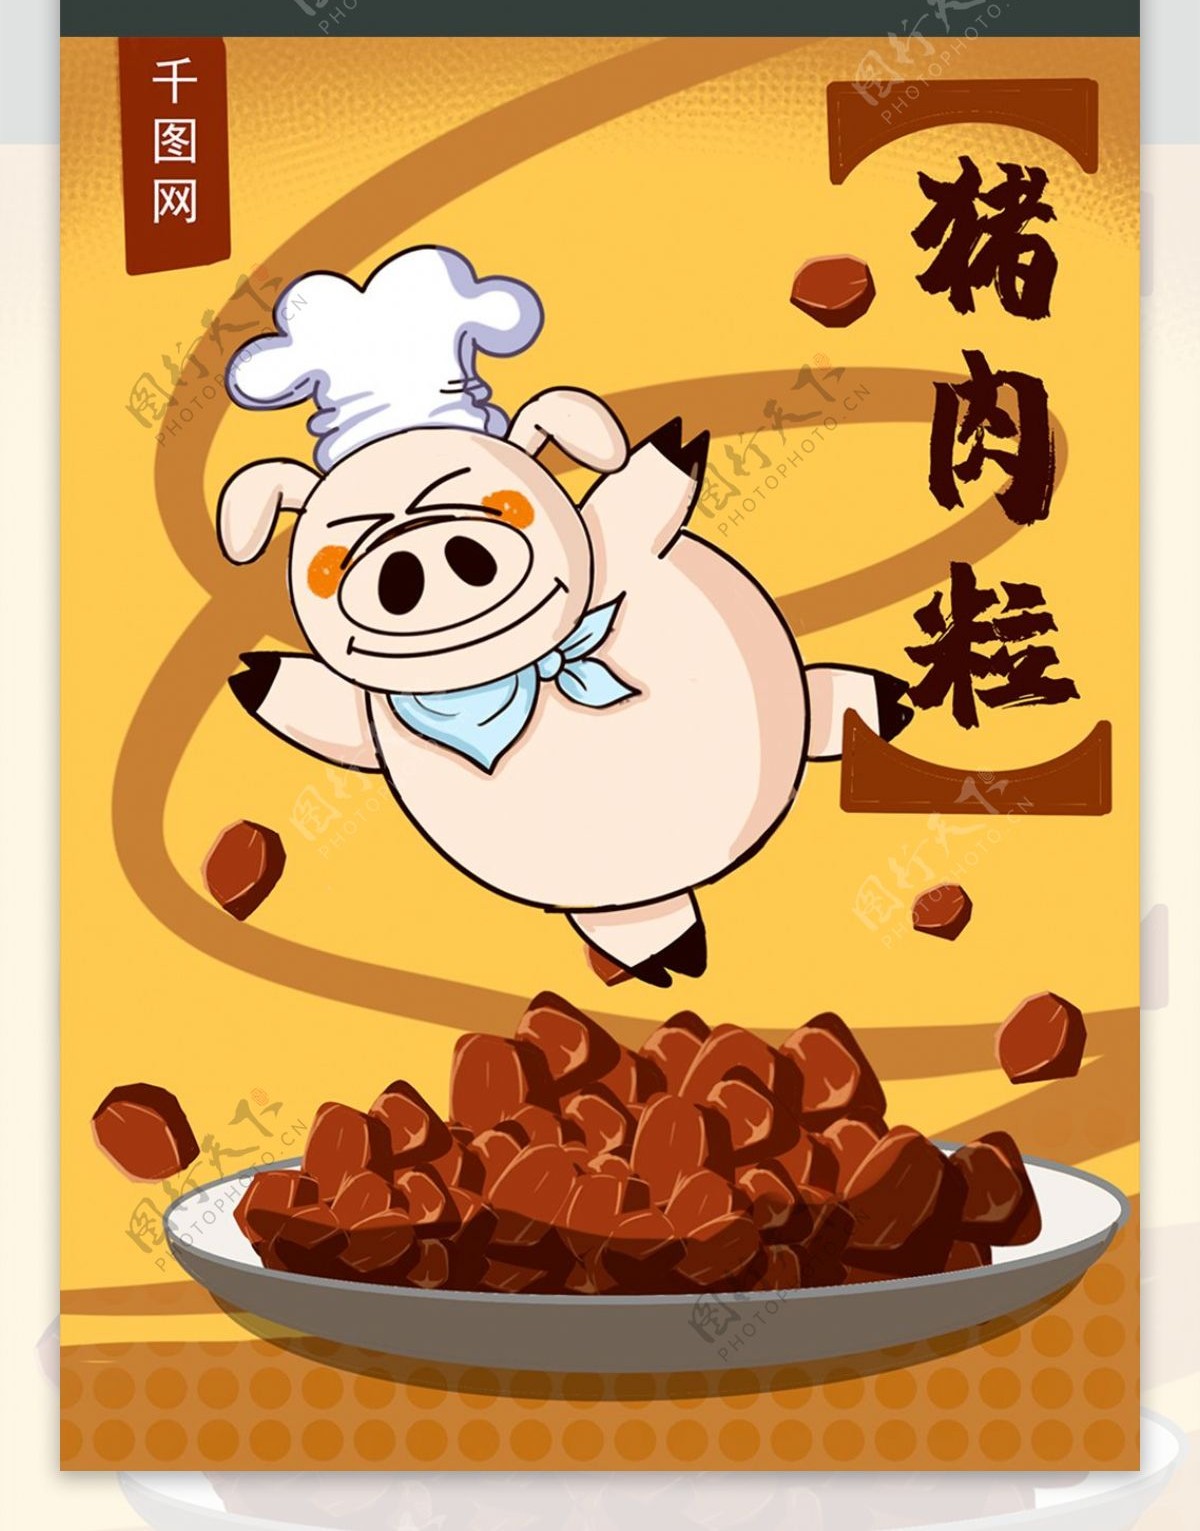 零食包装之猪肉粒卡通趣味包装